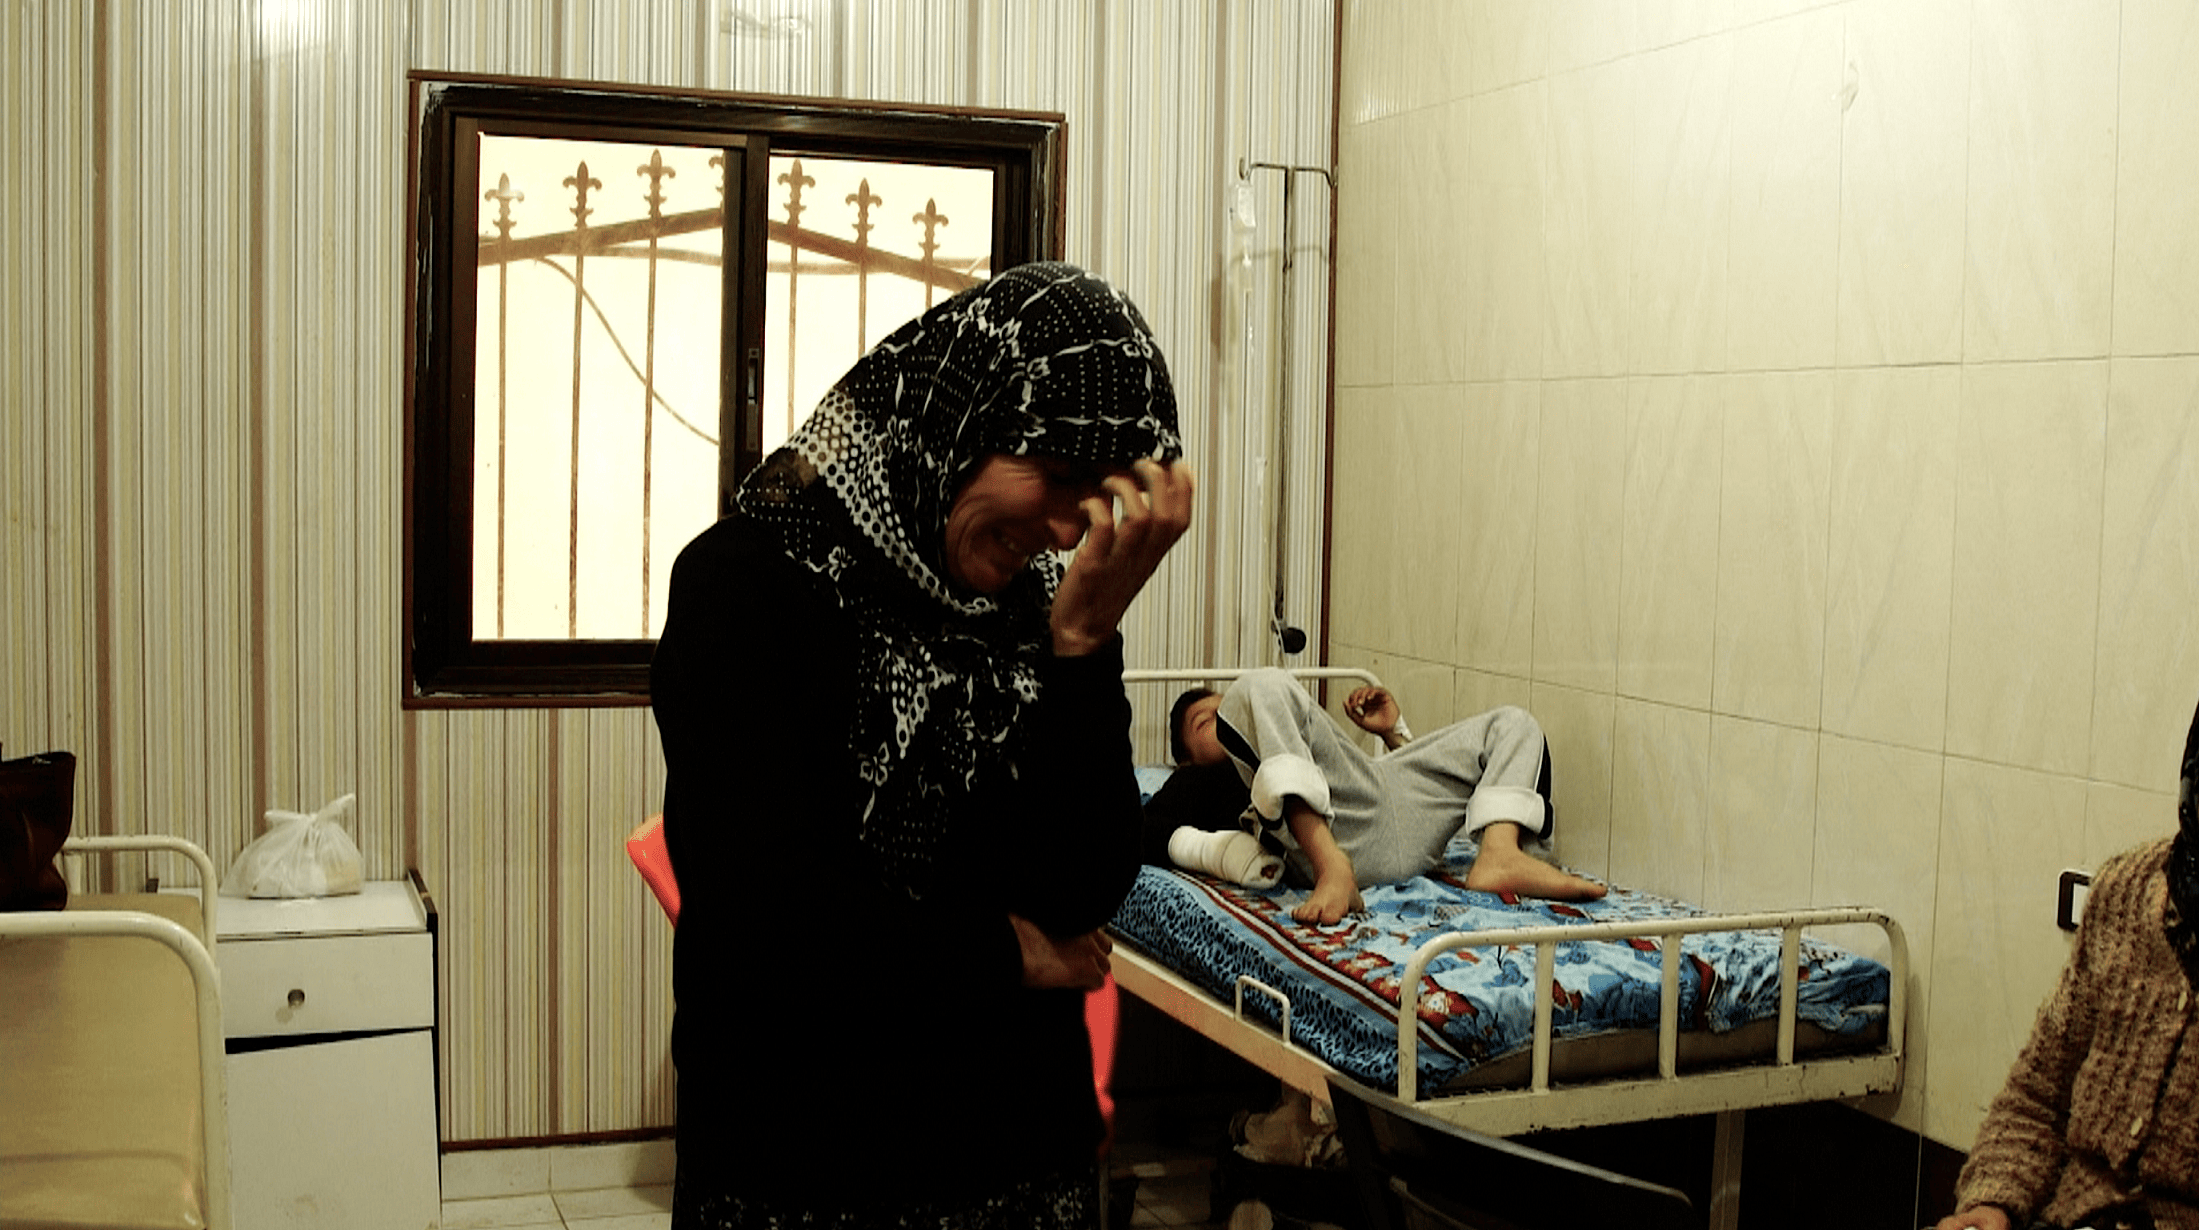 אישה ובנה הפצוע ממתינים בבית חולים מאולתר שנבנה לאחר הפלישה לעפרין (צילום: Jewan Abdi/Ronak Press)